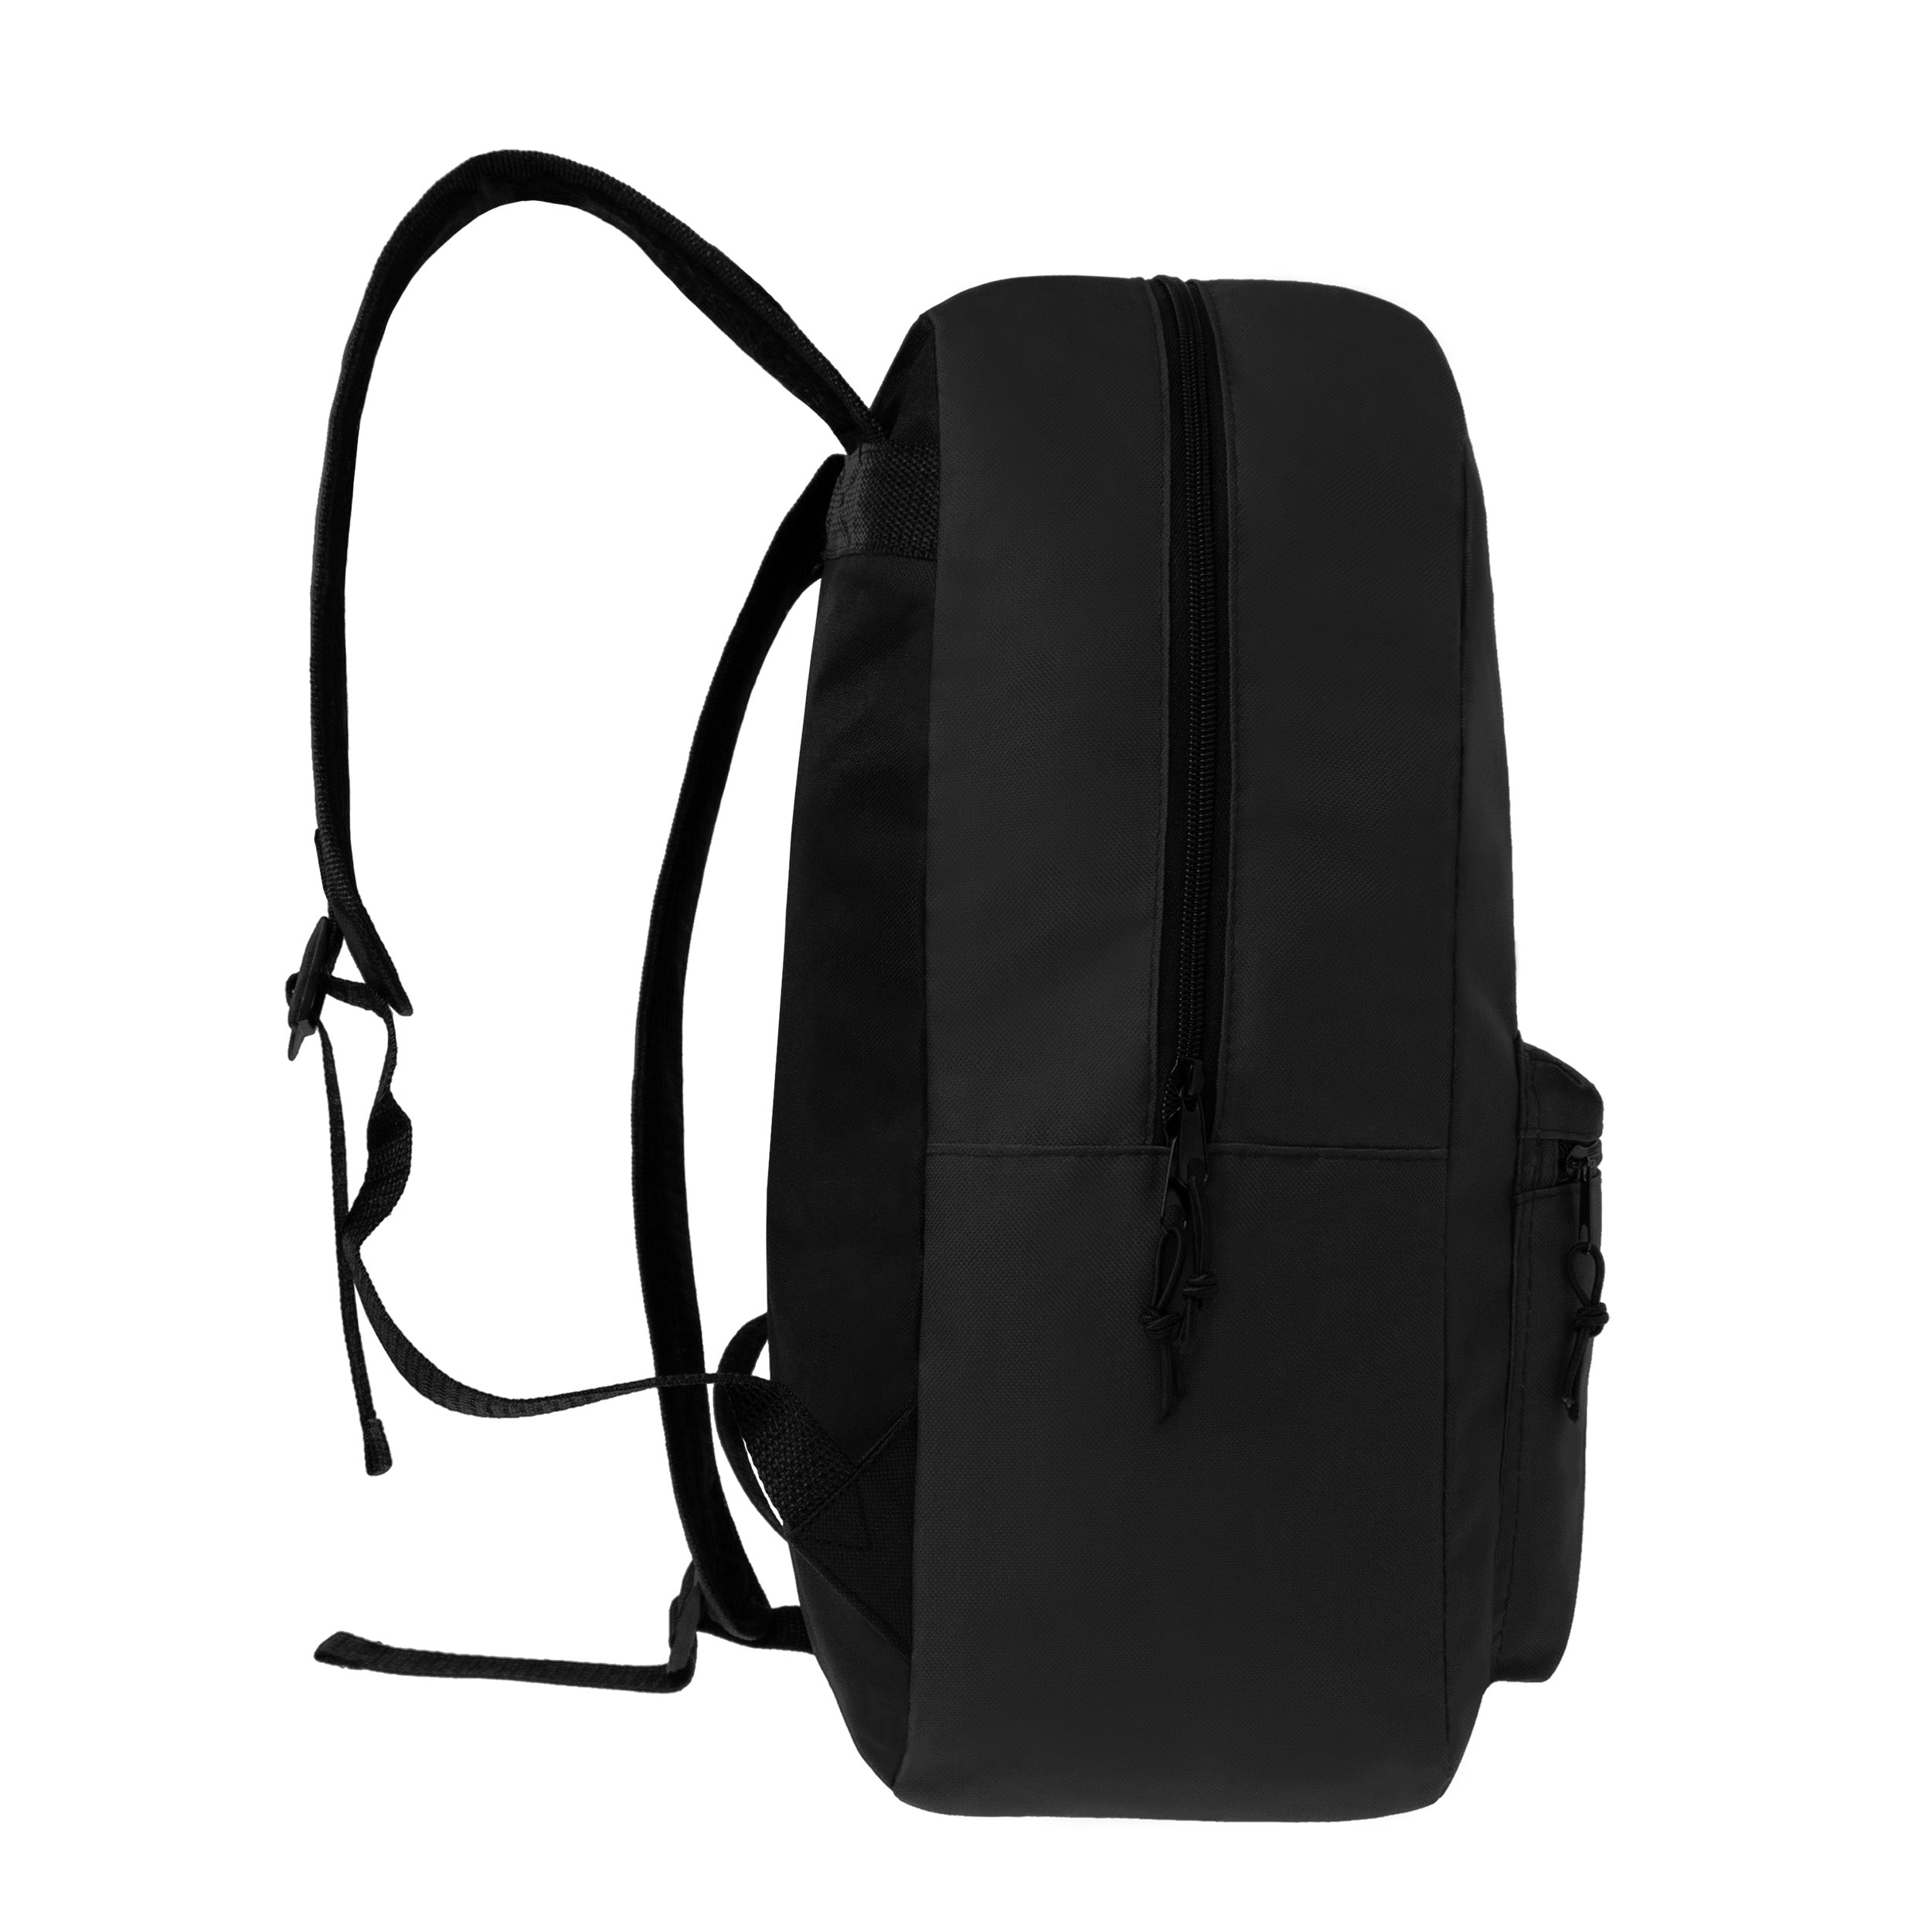 17 inch Black Backpacks for Boys & Girls